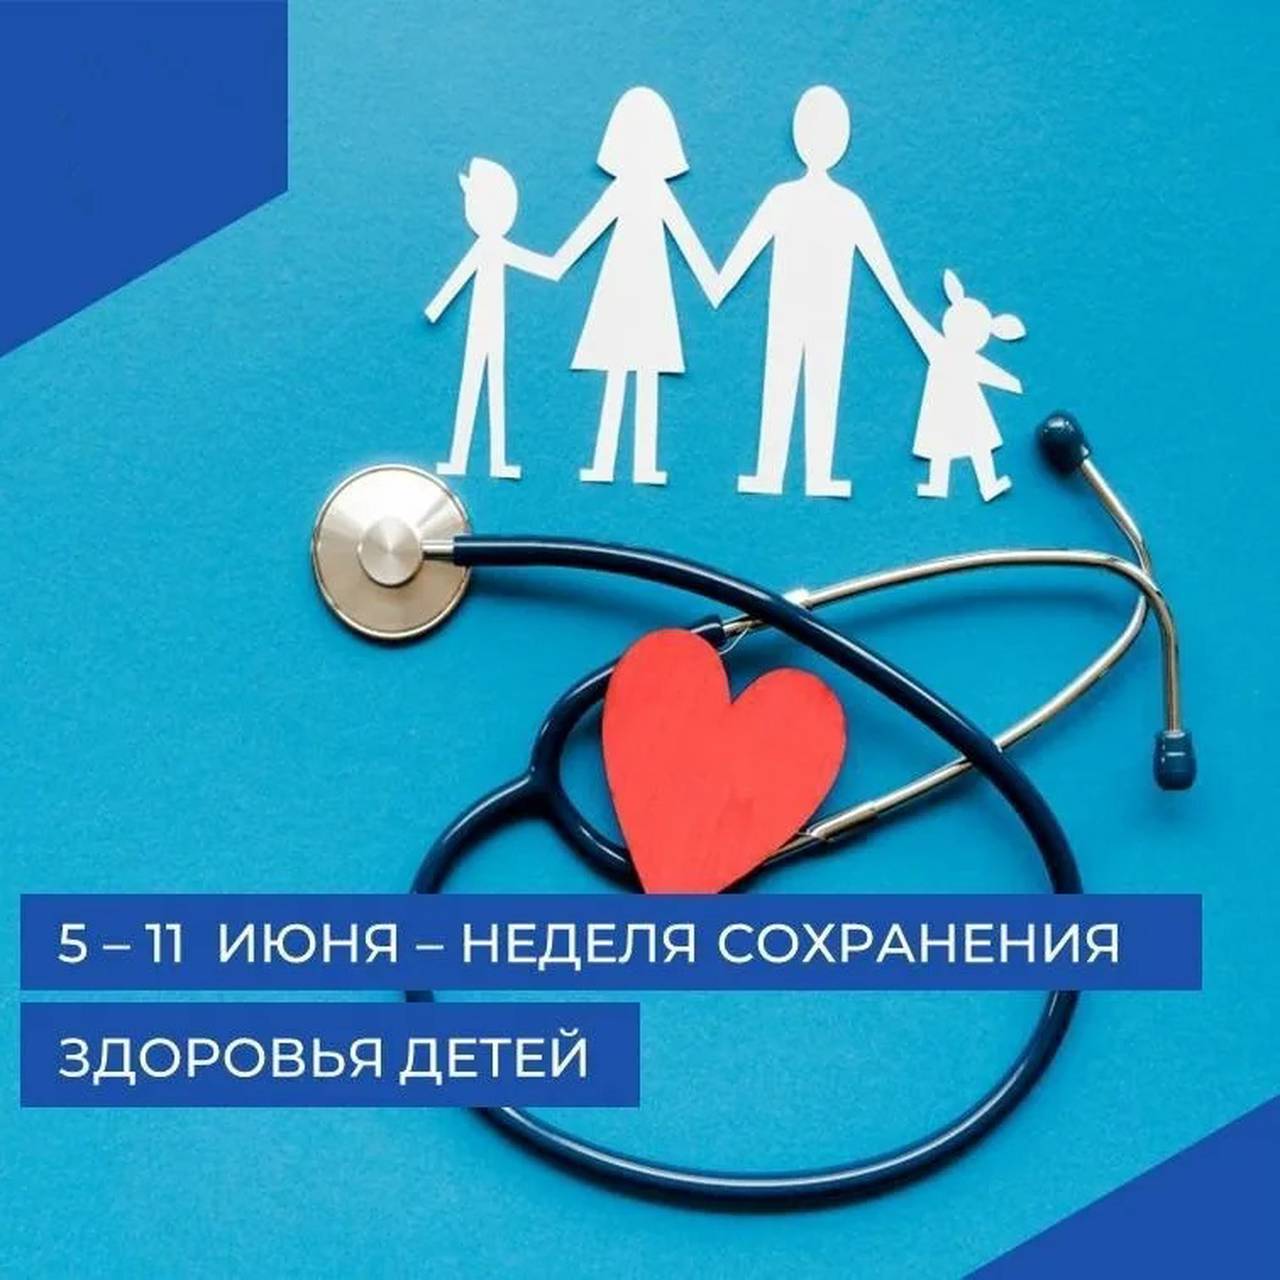 Сохранение здоровья детей — одна из основных задач государственной политики Российской Федерации в сфере защиты интересов детства